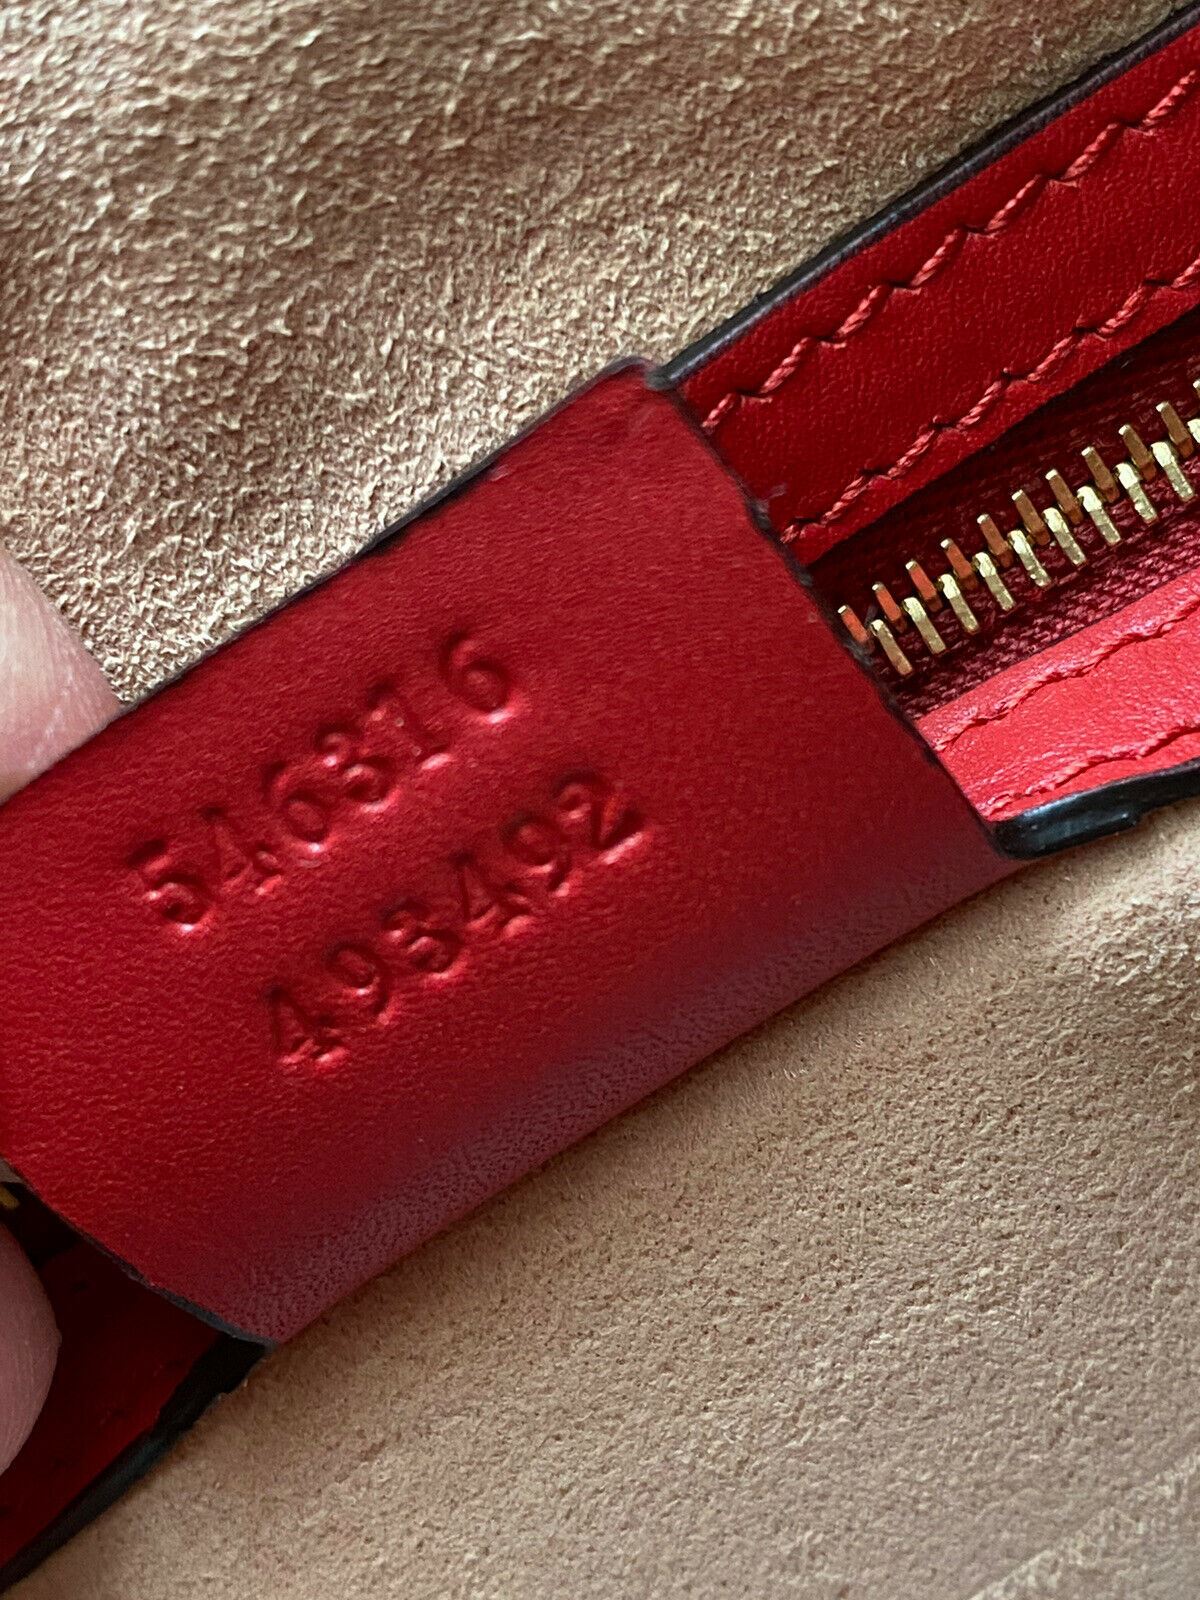 Gucci GG Supreme Blossom Rot/Blaue Leder-Einkaufstasche Italien